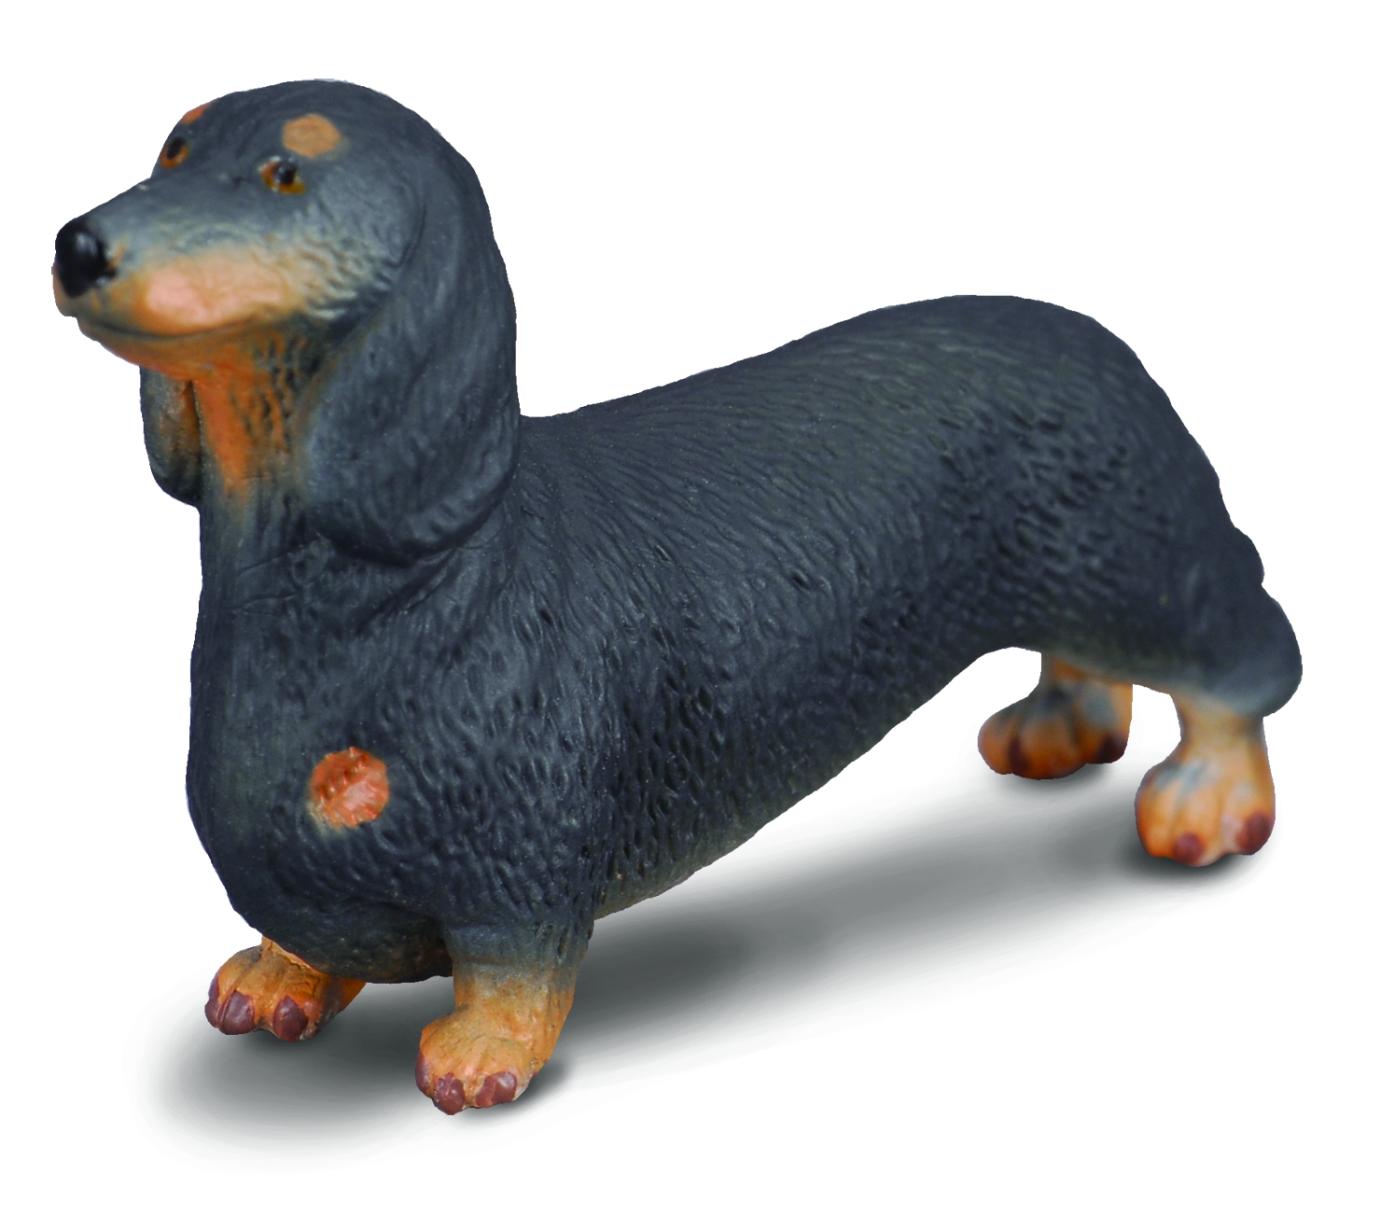 DACHSHUND DOG by Safari Ltd; toy/replica 